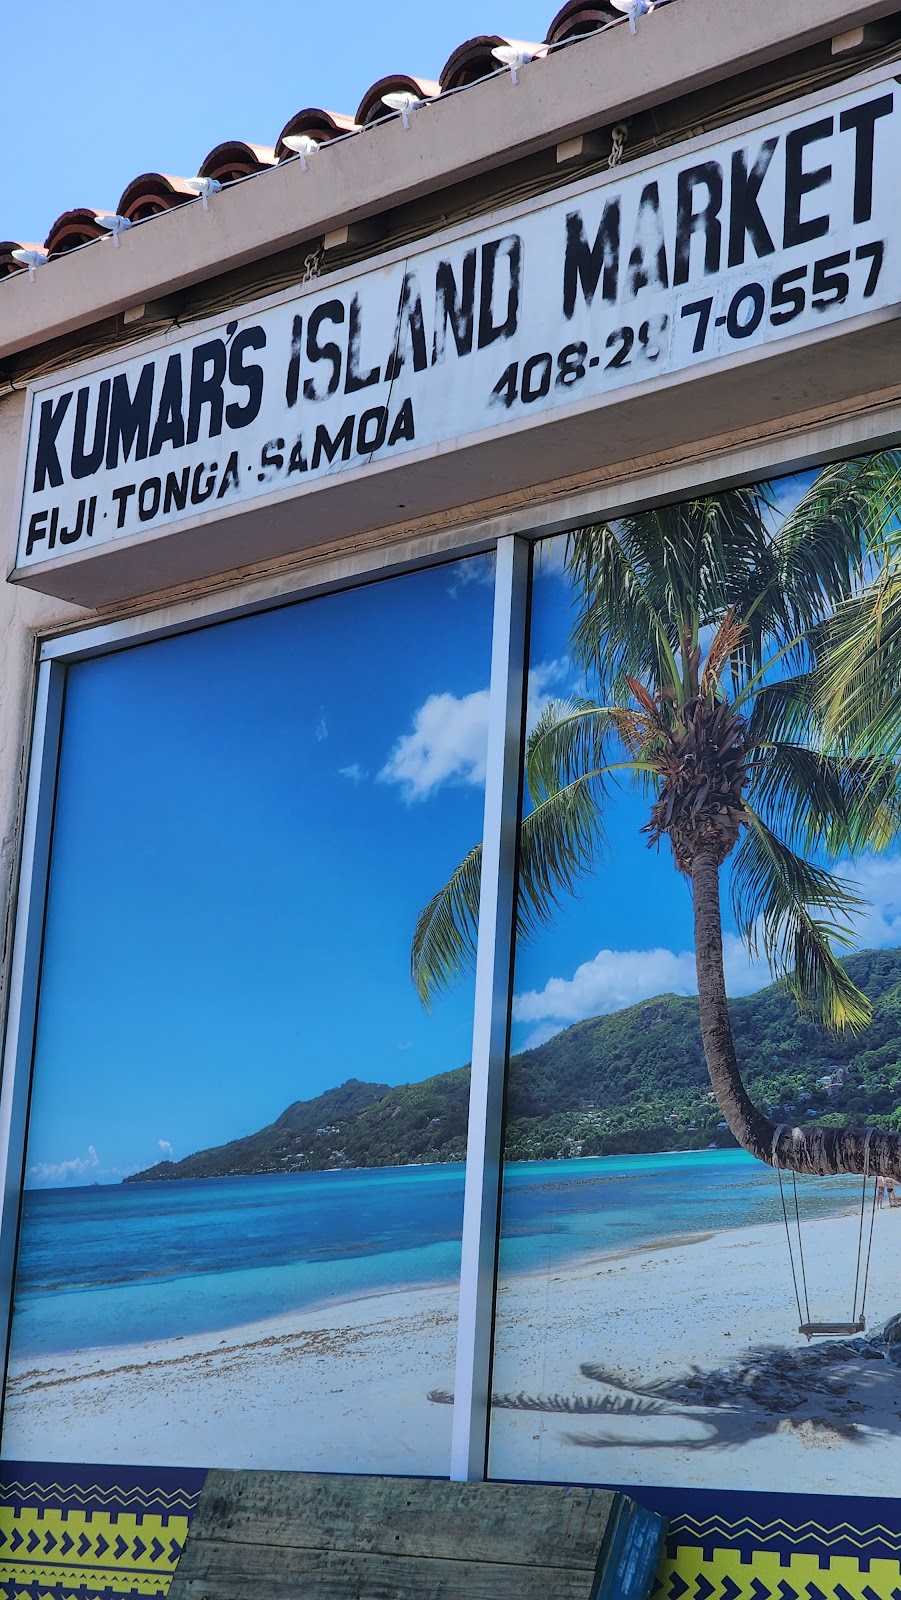 Kumar’s Island Market | 1440 E Santa Clara St, San Jose, CA 95116, USA | Phone: (408) 287-0557